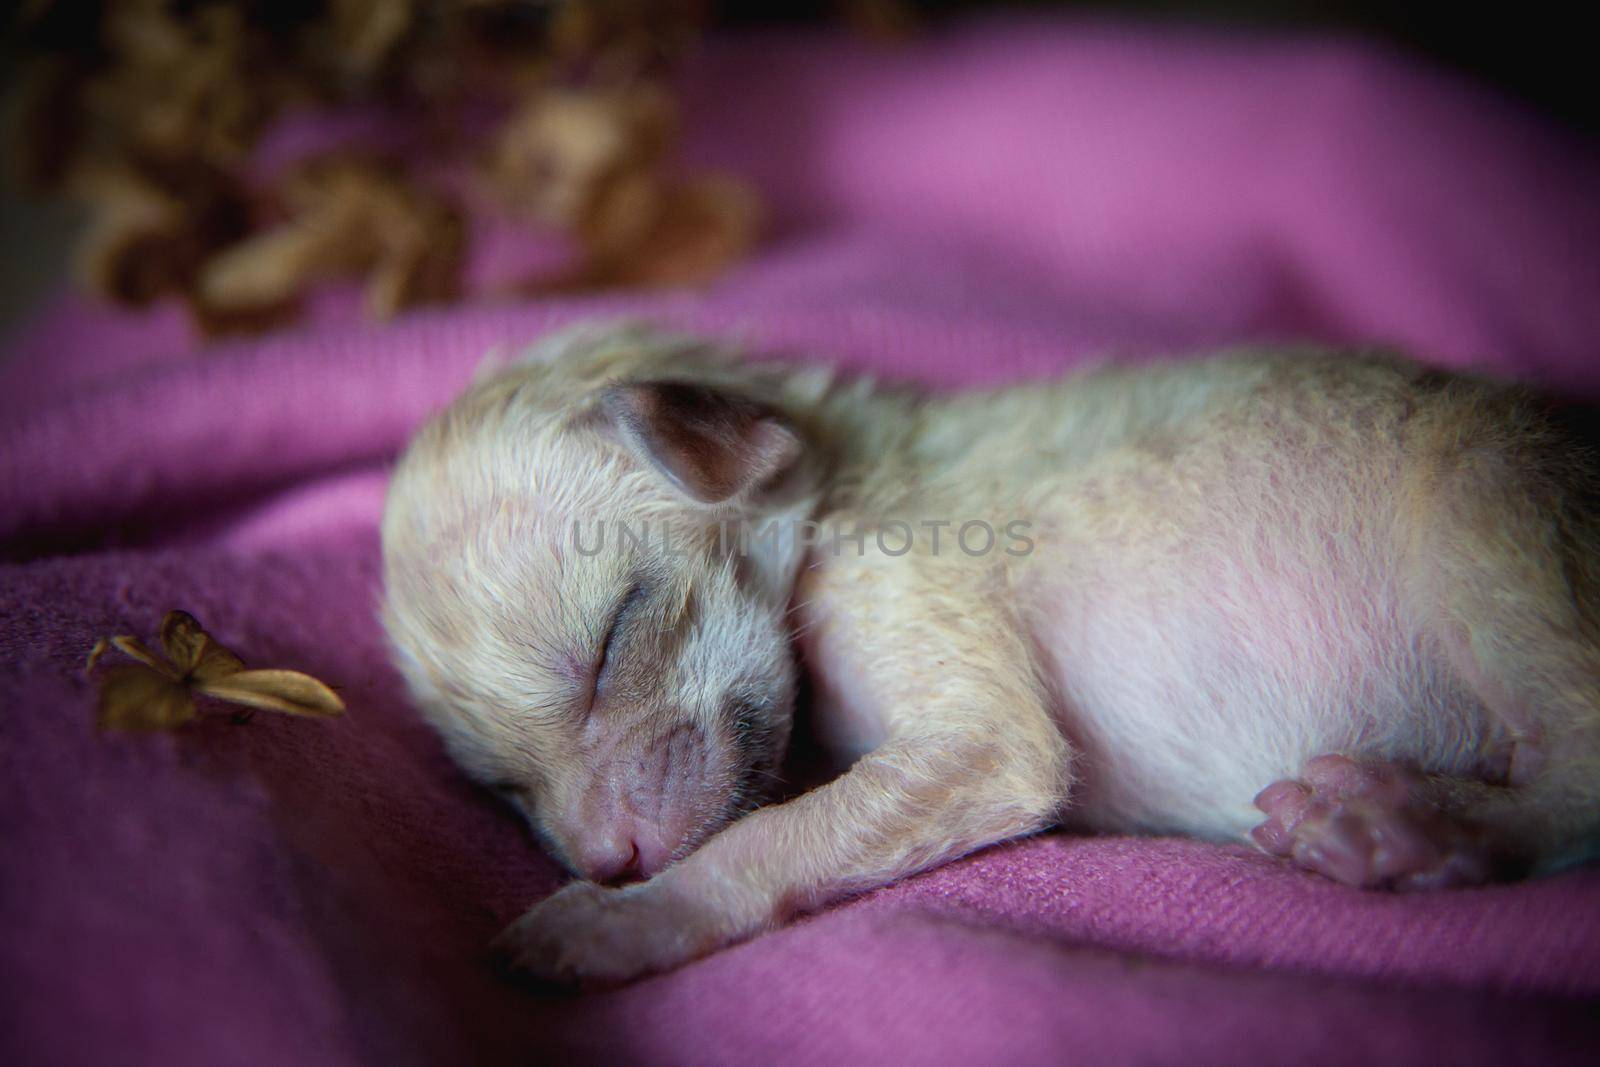 Cute Newborn fennec fox cub on hand, 2 weeks old